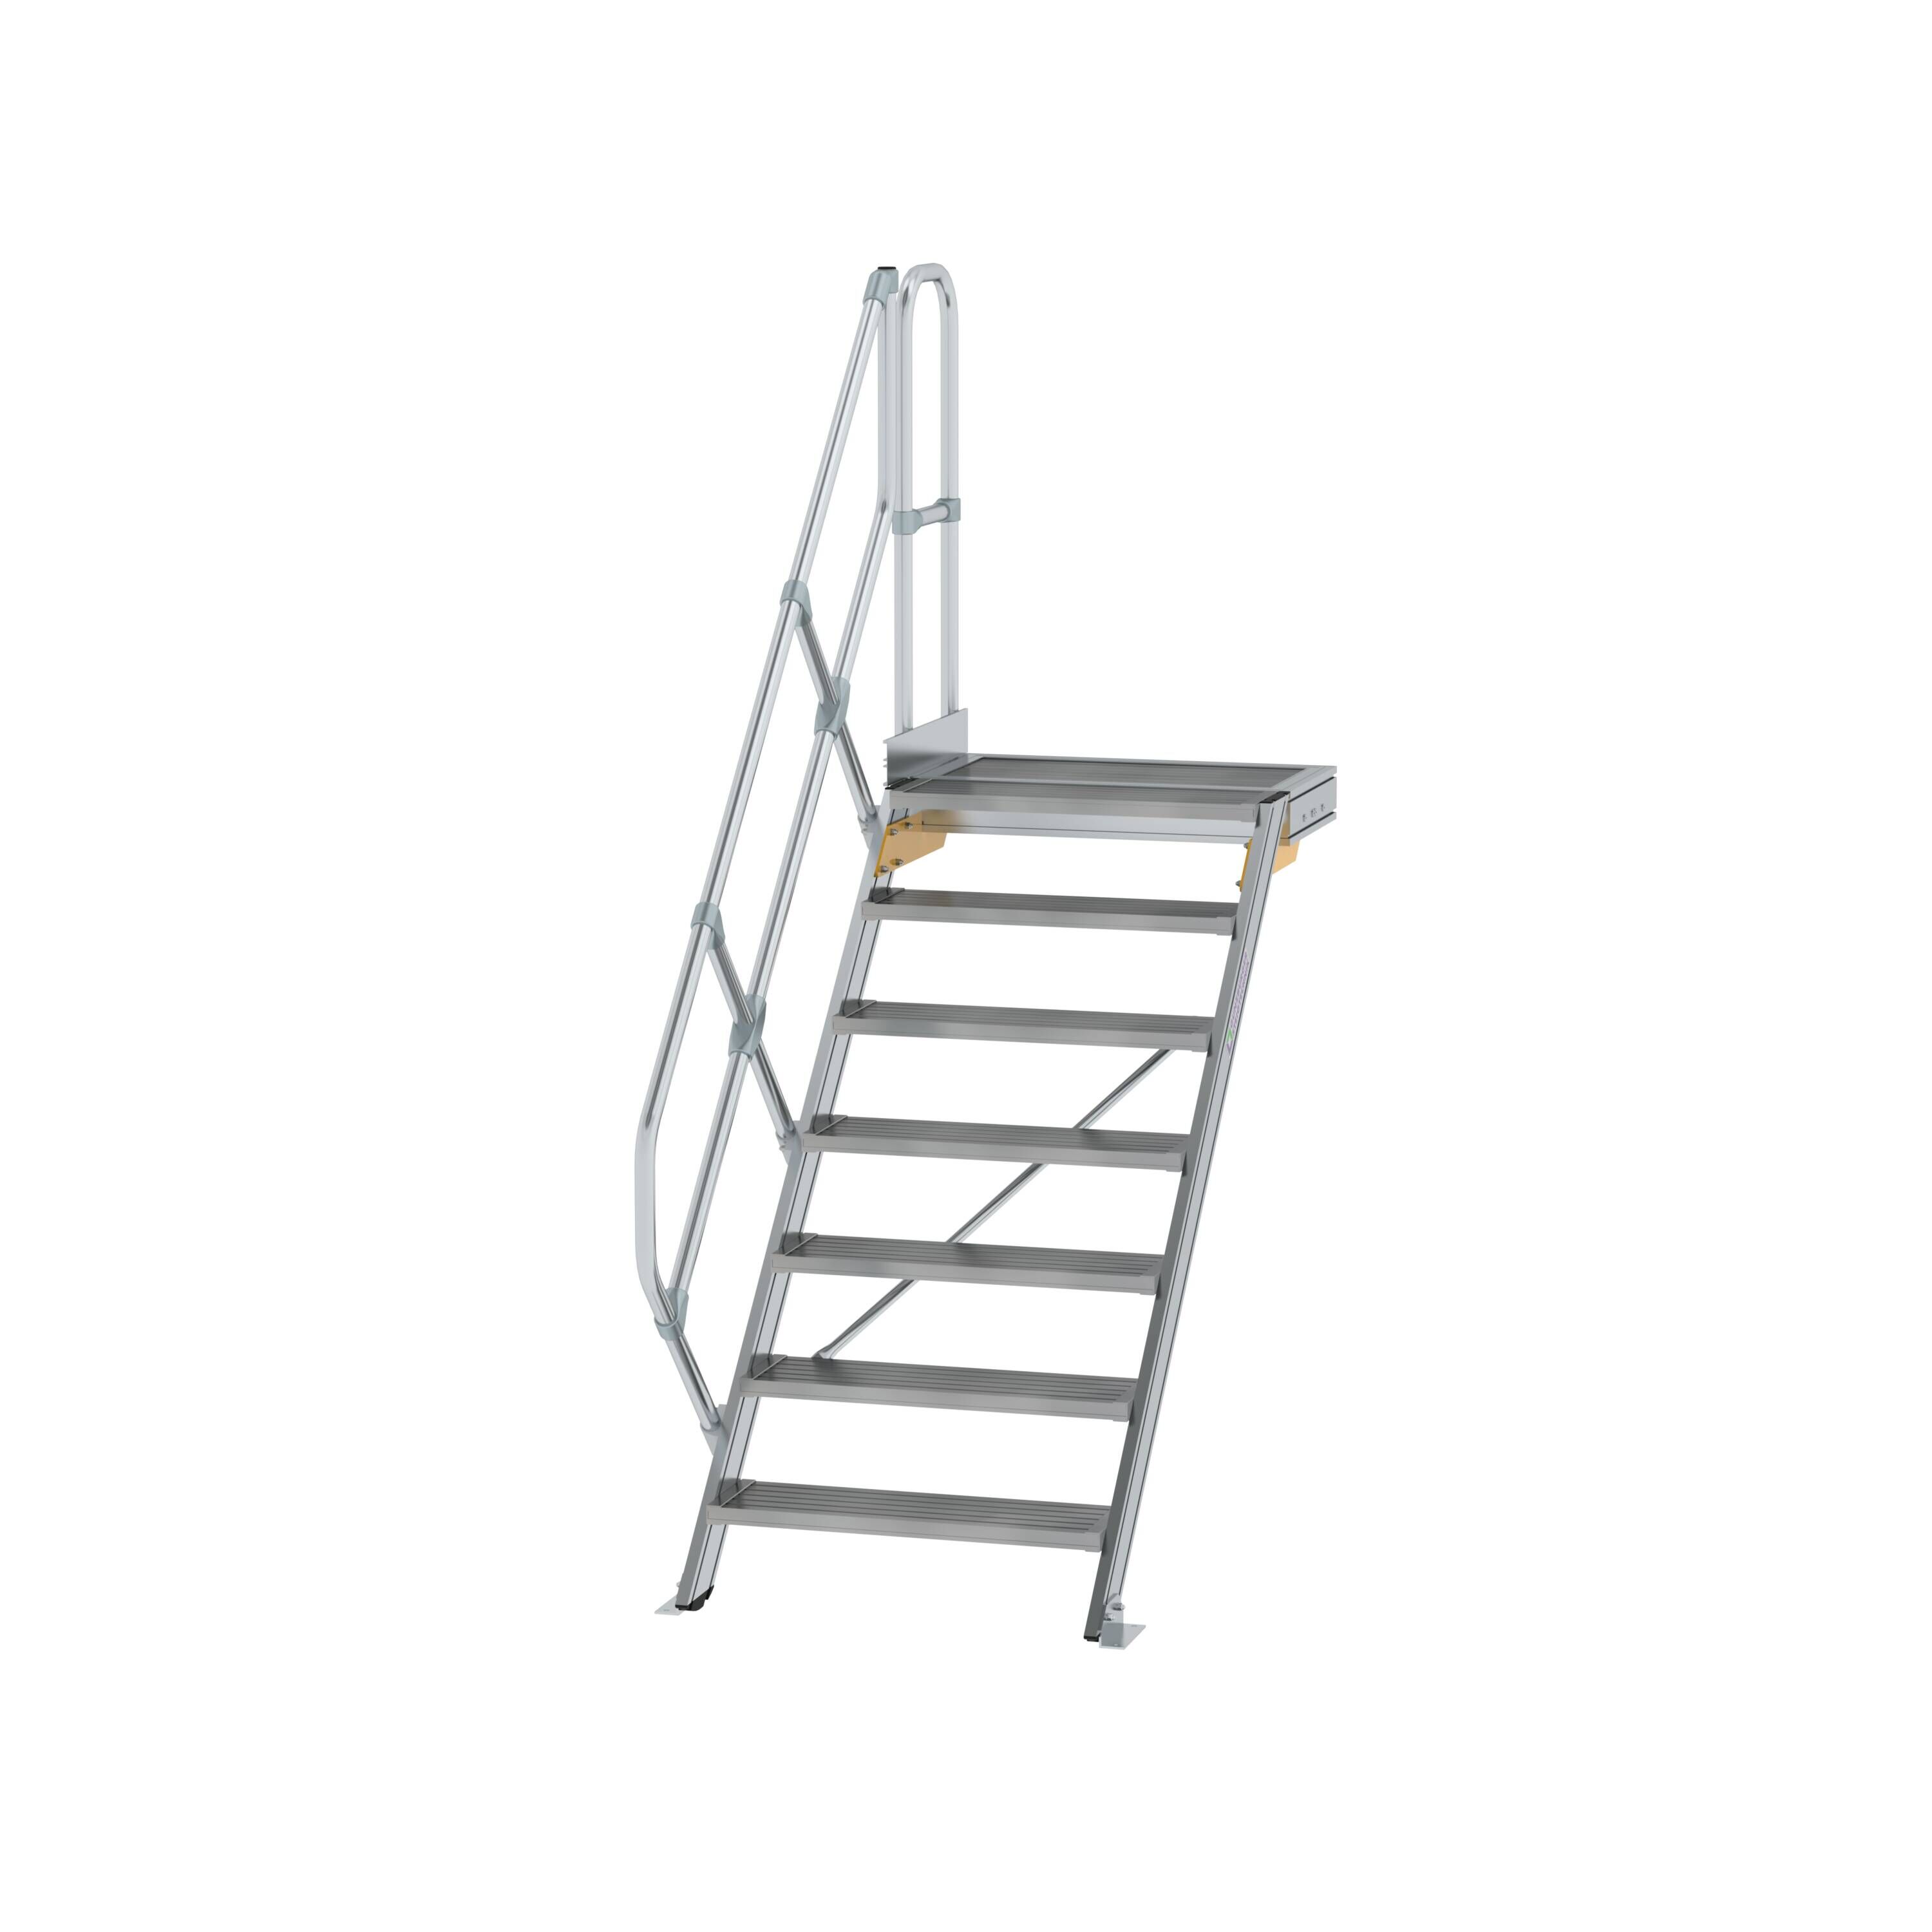 Treppe mit Plattform 45° Stufenbreite 800 mm 7 Stufen Aluminium geriffelt